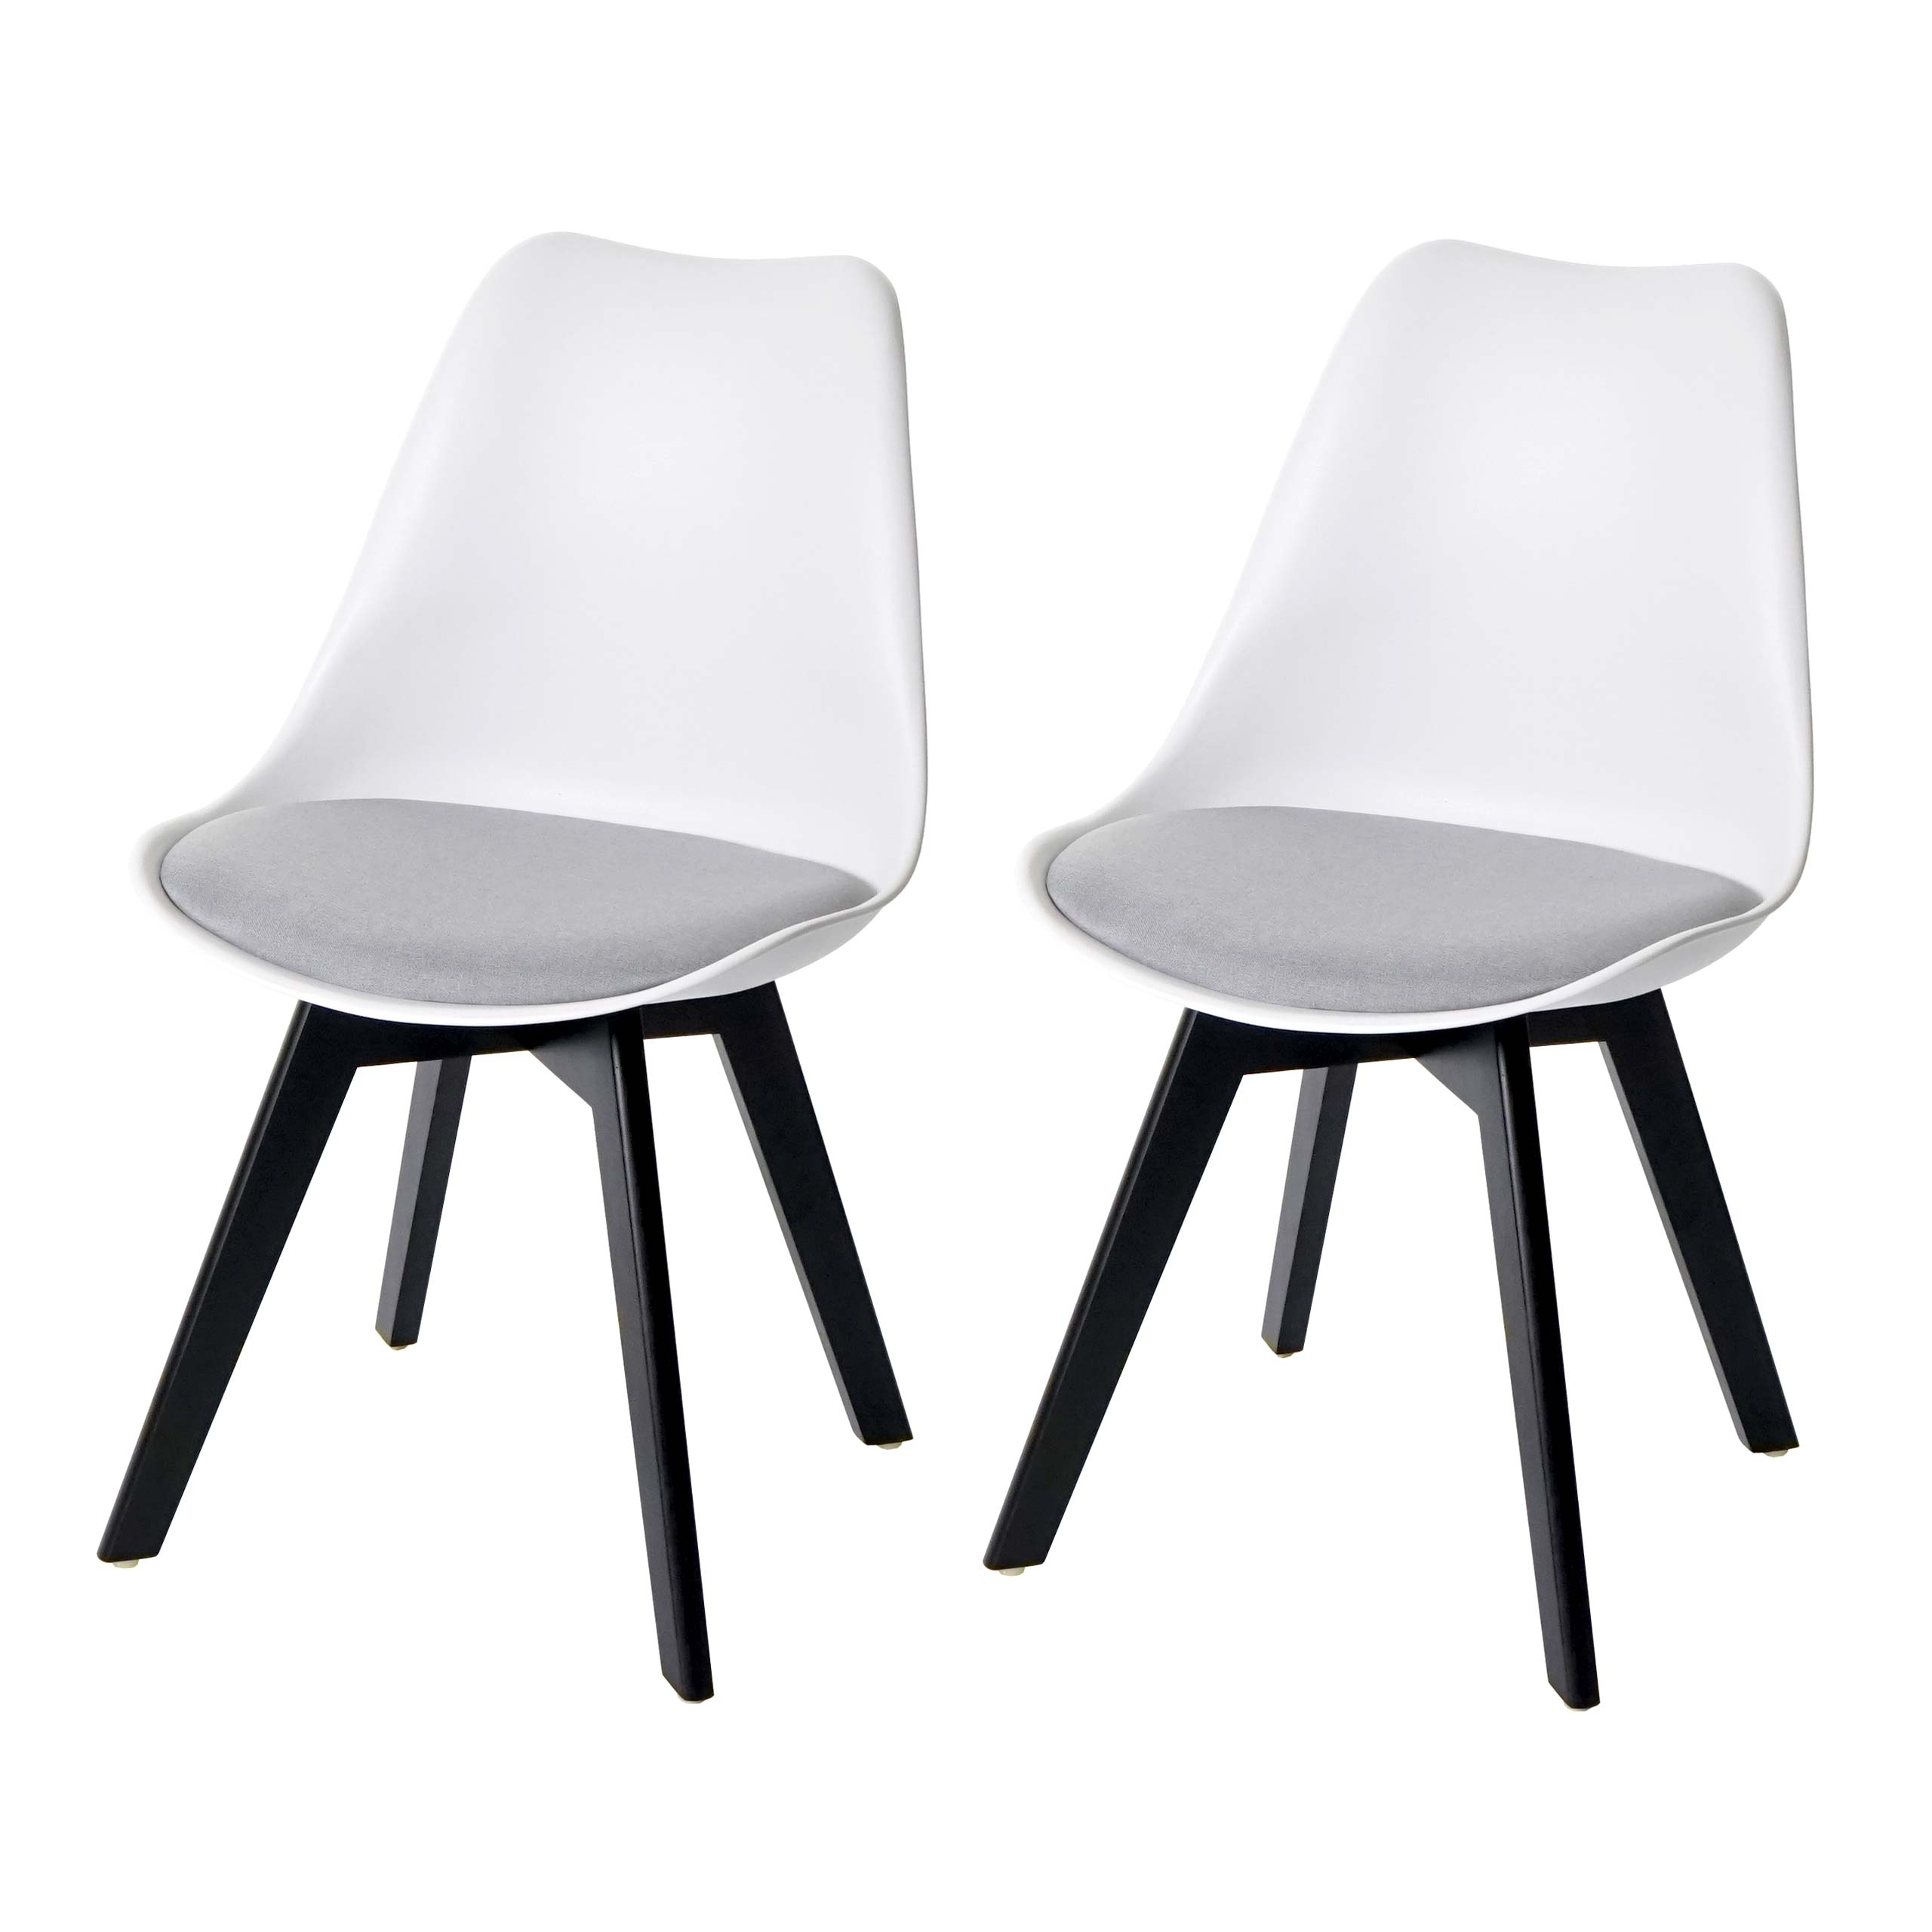 Einzelstück | 2er-Set Esszimmerstuhl HWC-E53, Stuhl Küchenstuhl, Retro  Design ~ weiß/grau, Stoff, schwarze Beine von Heute-Wohnen